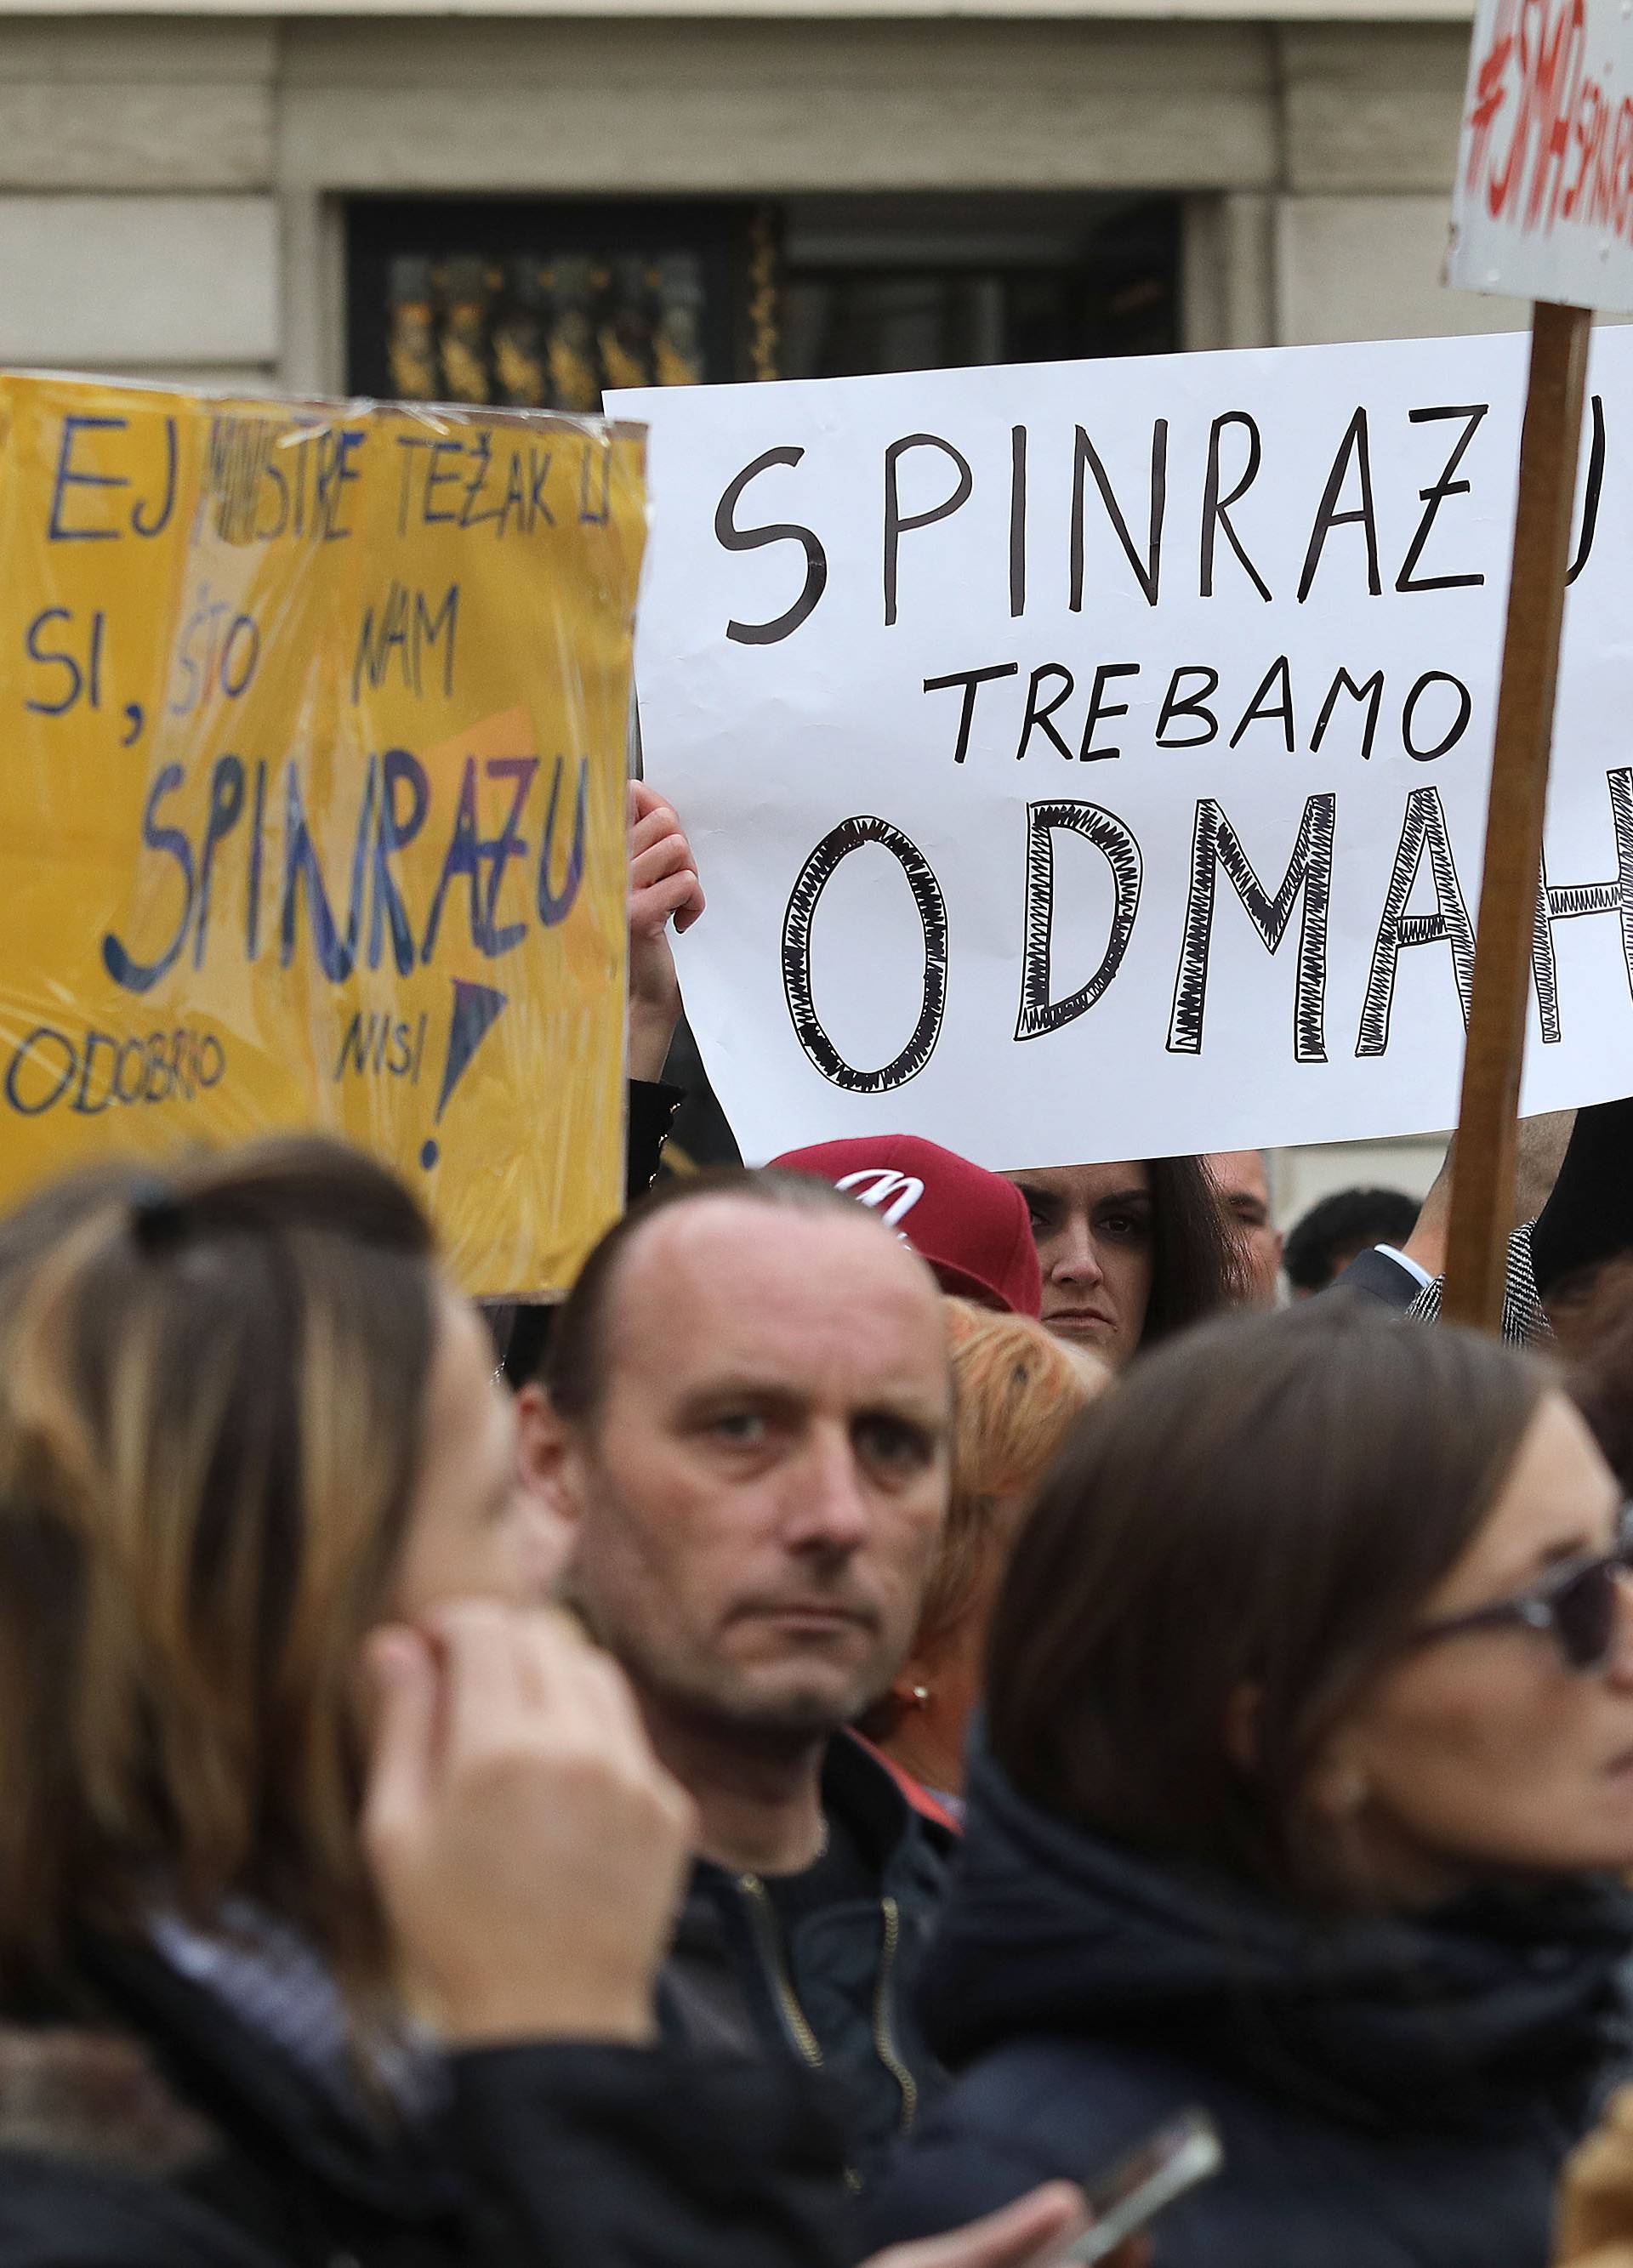 Premijer Plenković obećao da će se osigurati lijek Spinraza